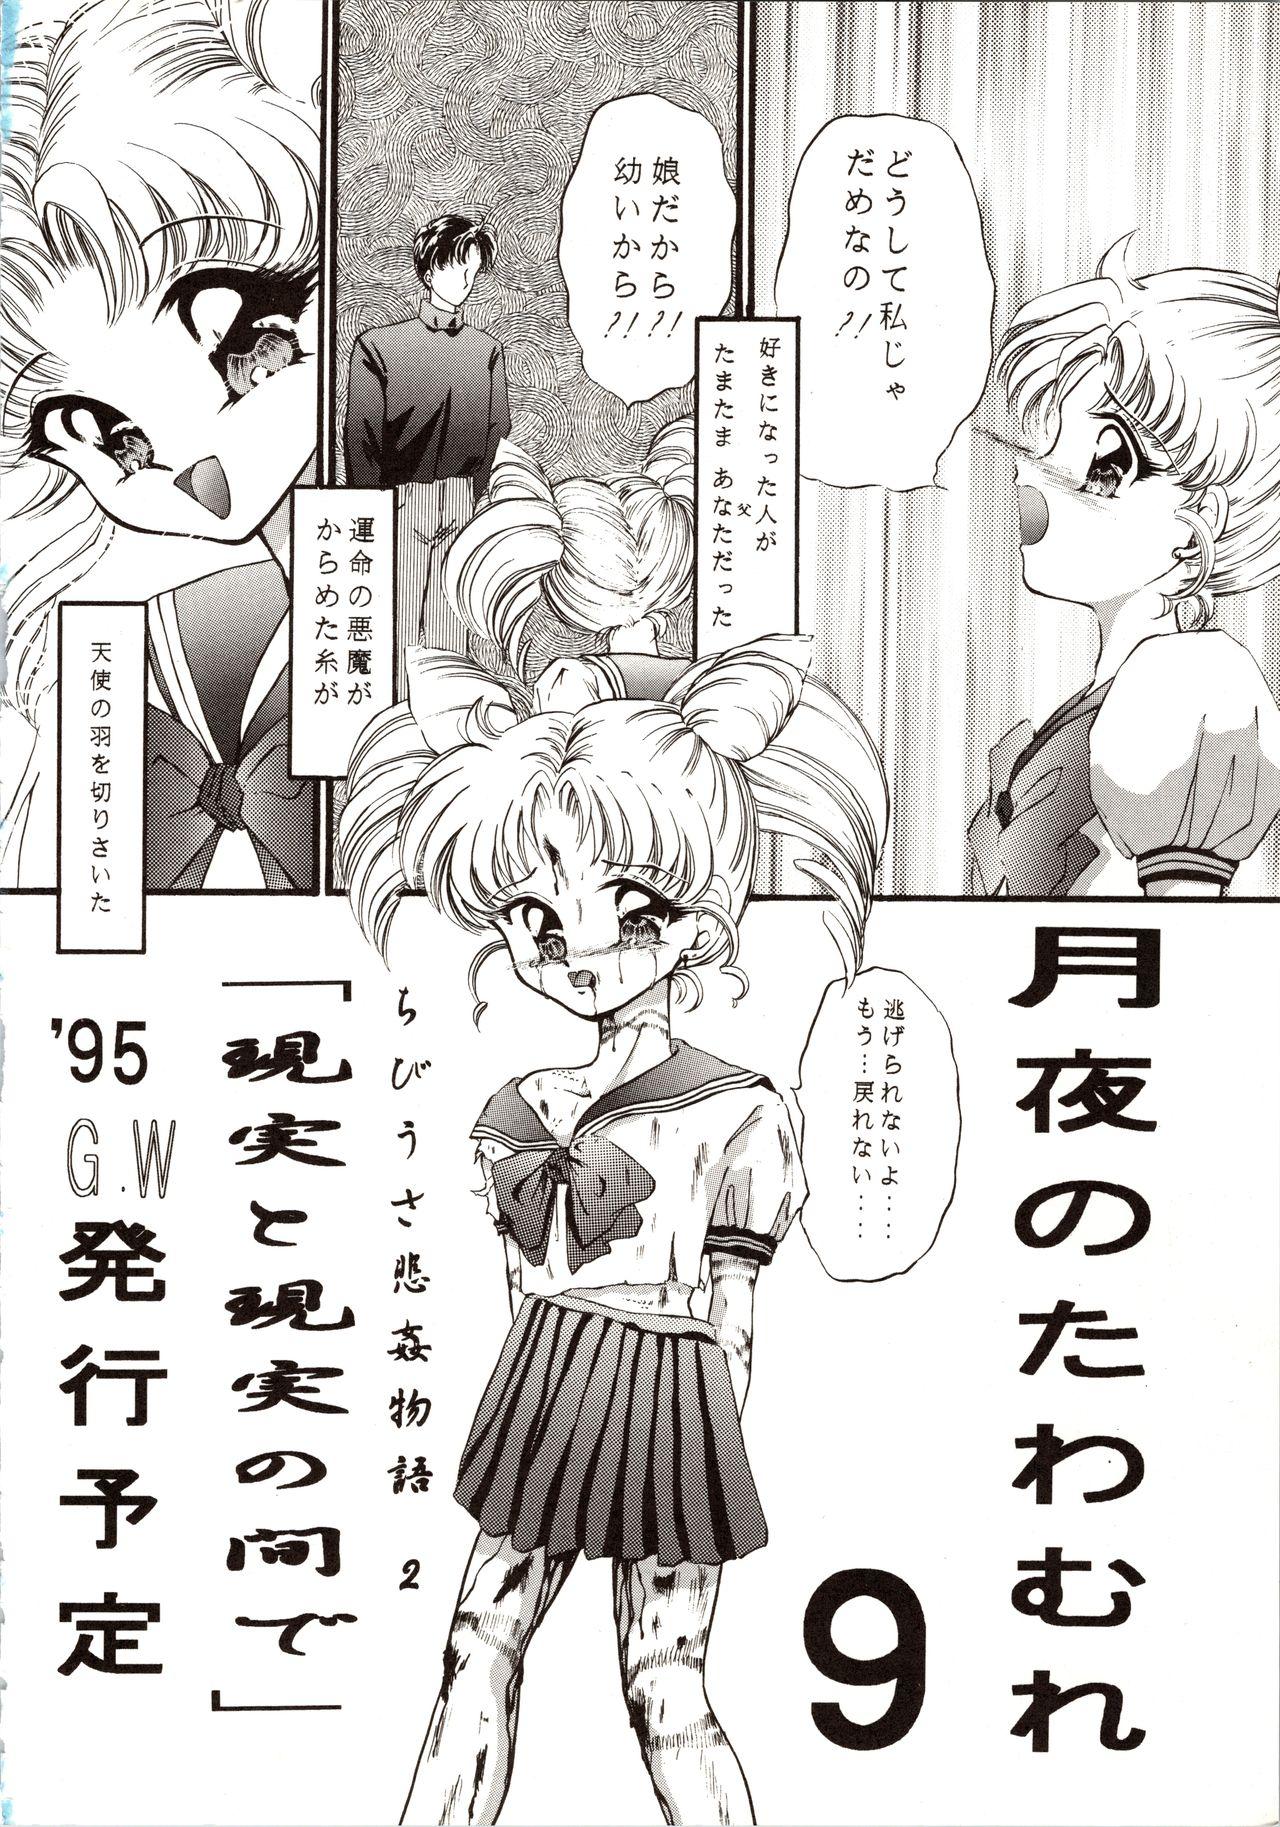 Hetero Tsukiyo no Tawamure 8 - Sailor moon Massage Creep - Page 38